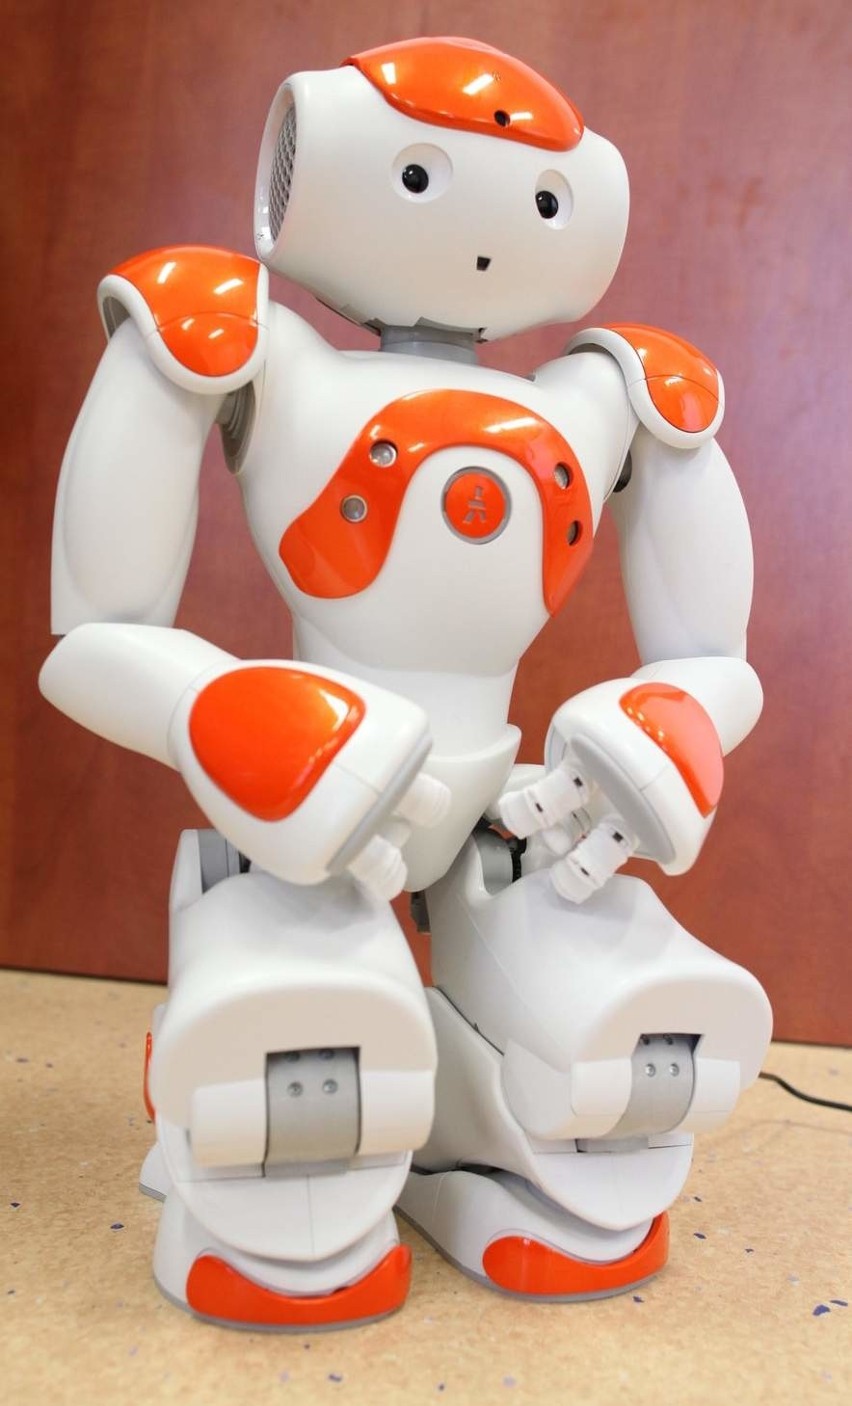 Robot humanoidalny na Politechnice Opolskiej. Przypominający...